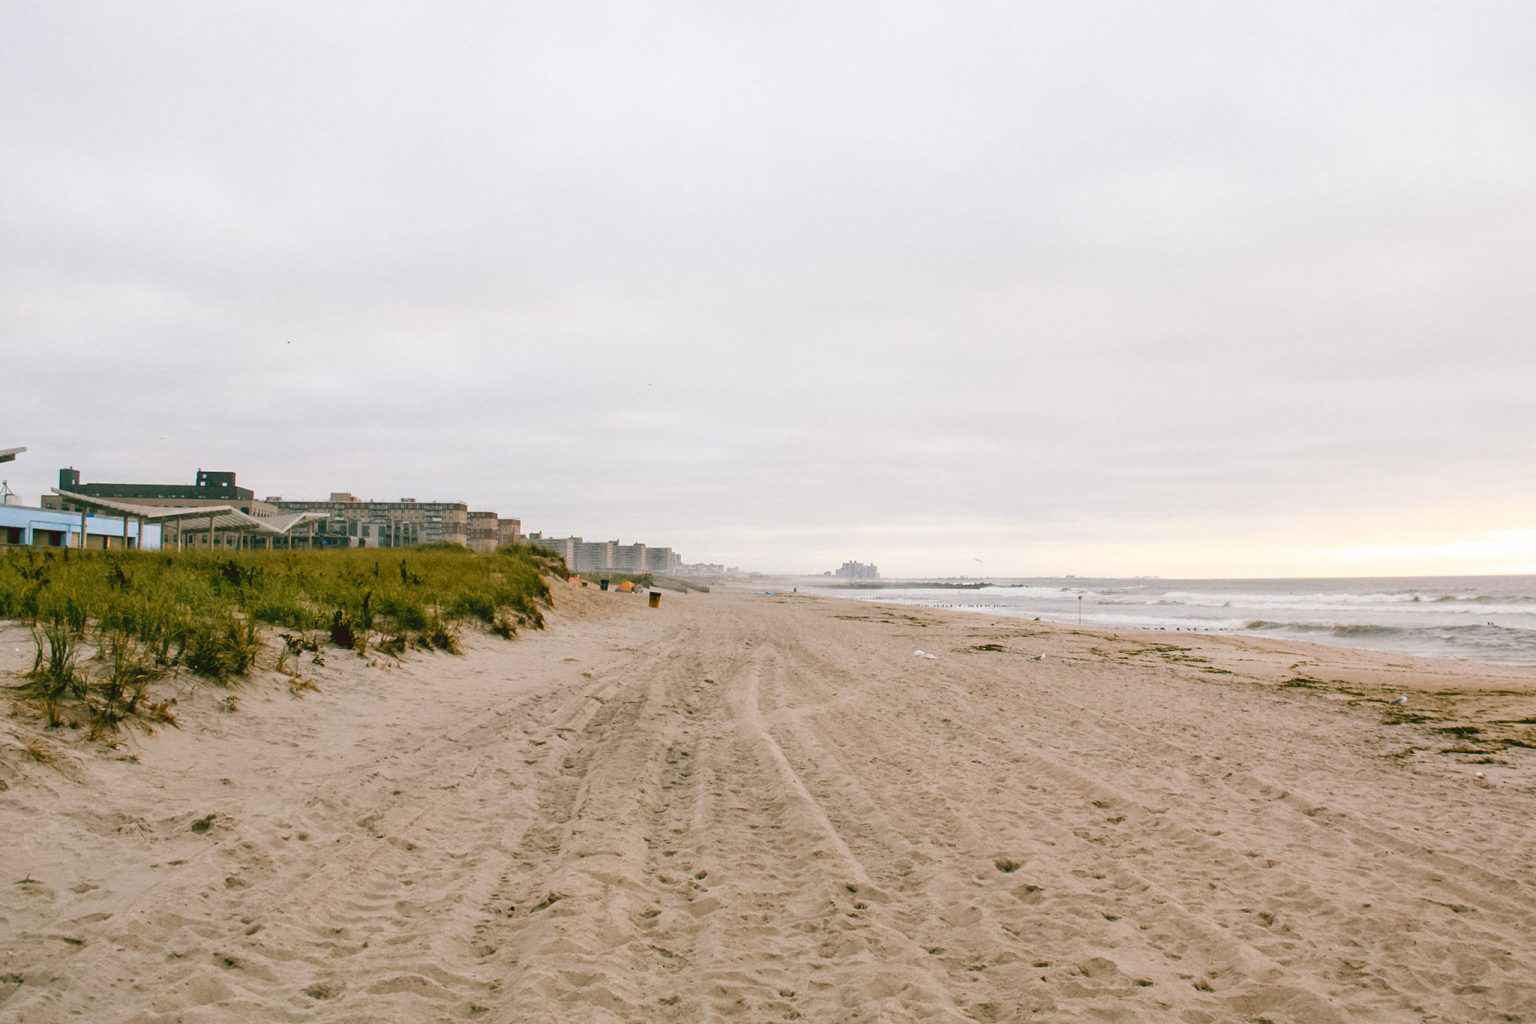 A long strip of sand beach.